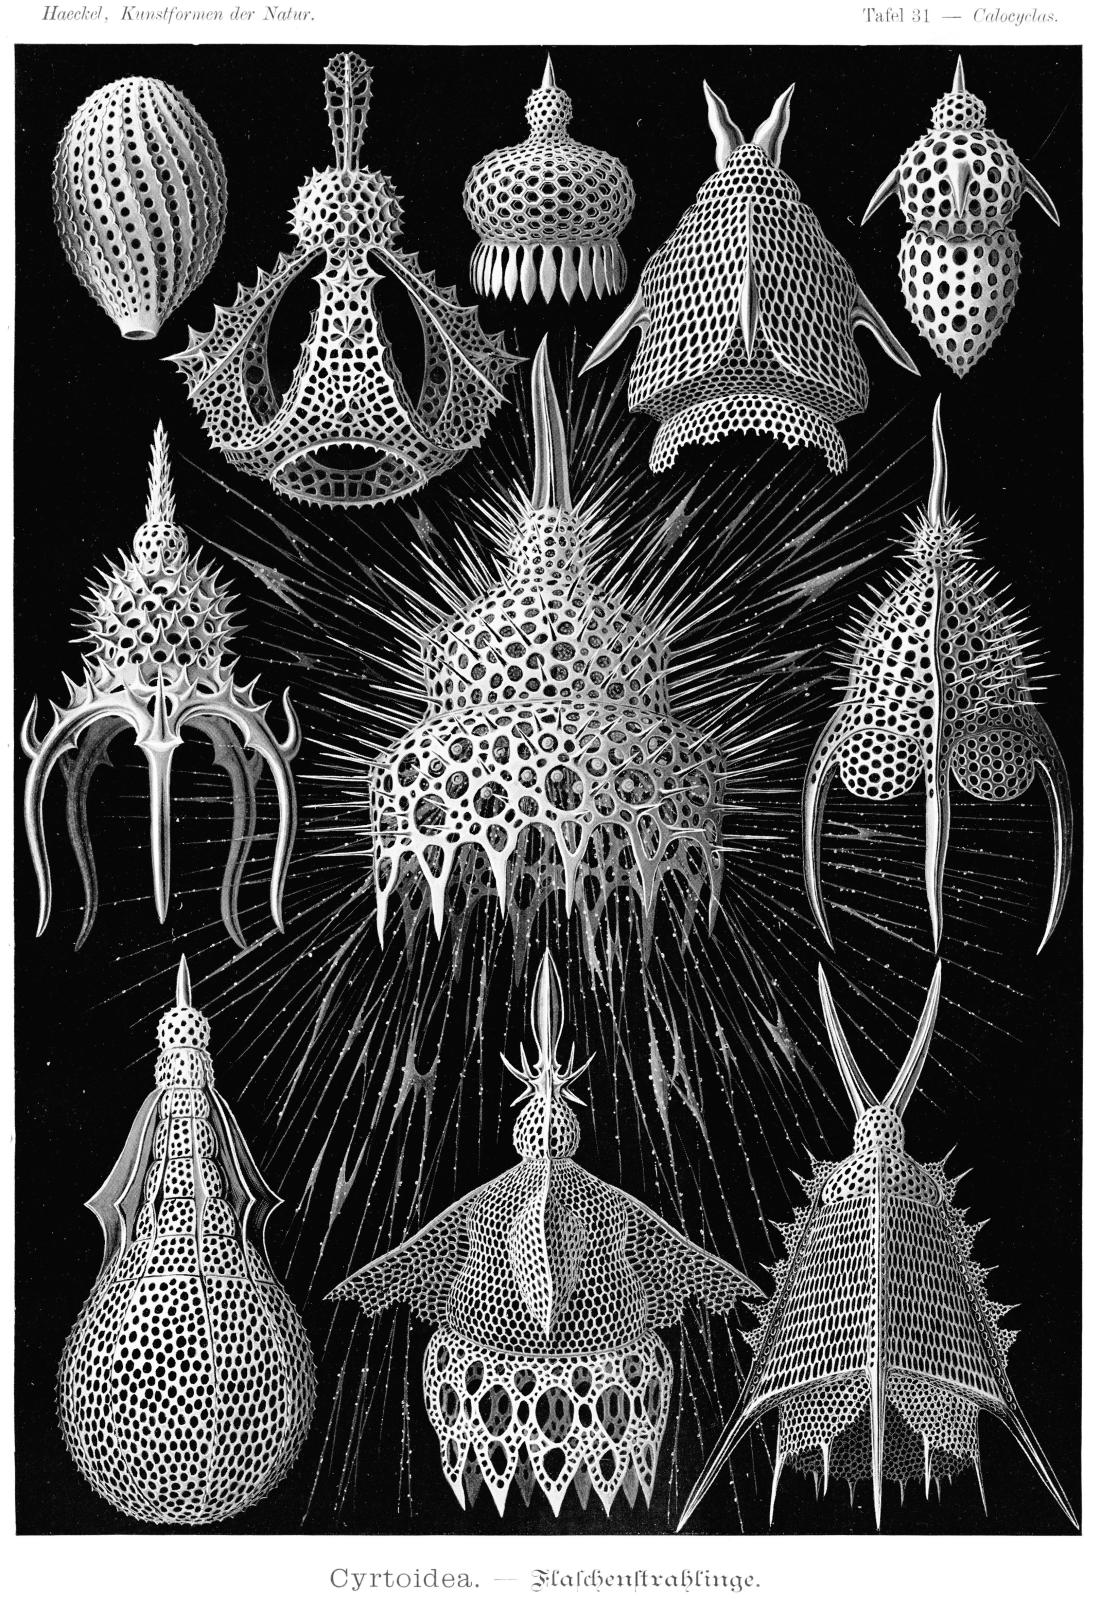 Ernst Haeckel, Kunstformen der Natur, planche 31, Leipzig, Vienne, Bibliographisches Institut, 1899-1904. DR